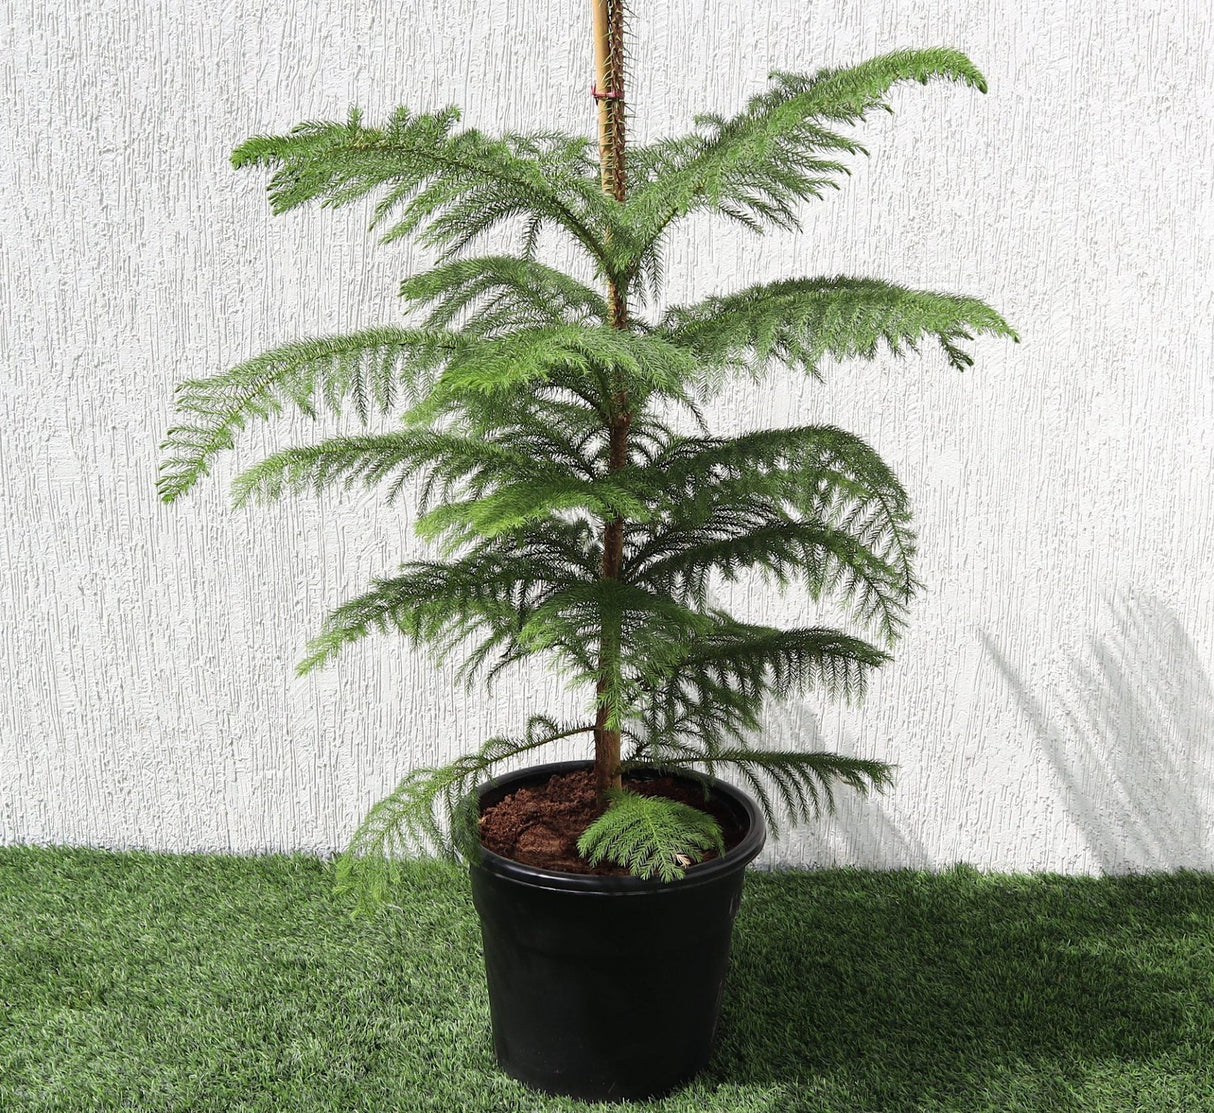 Araucaria Heterophylla Indoor "Norfolk Island Pine"